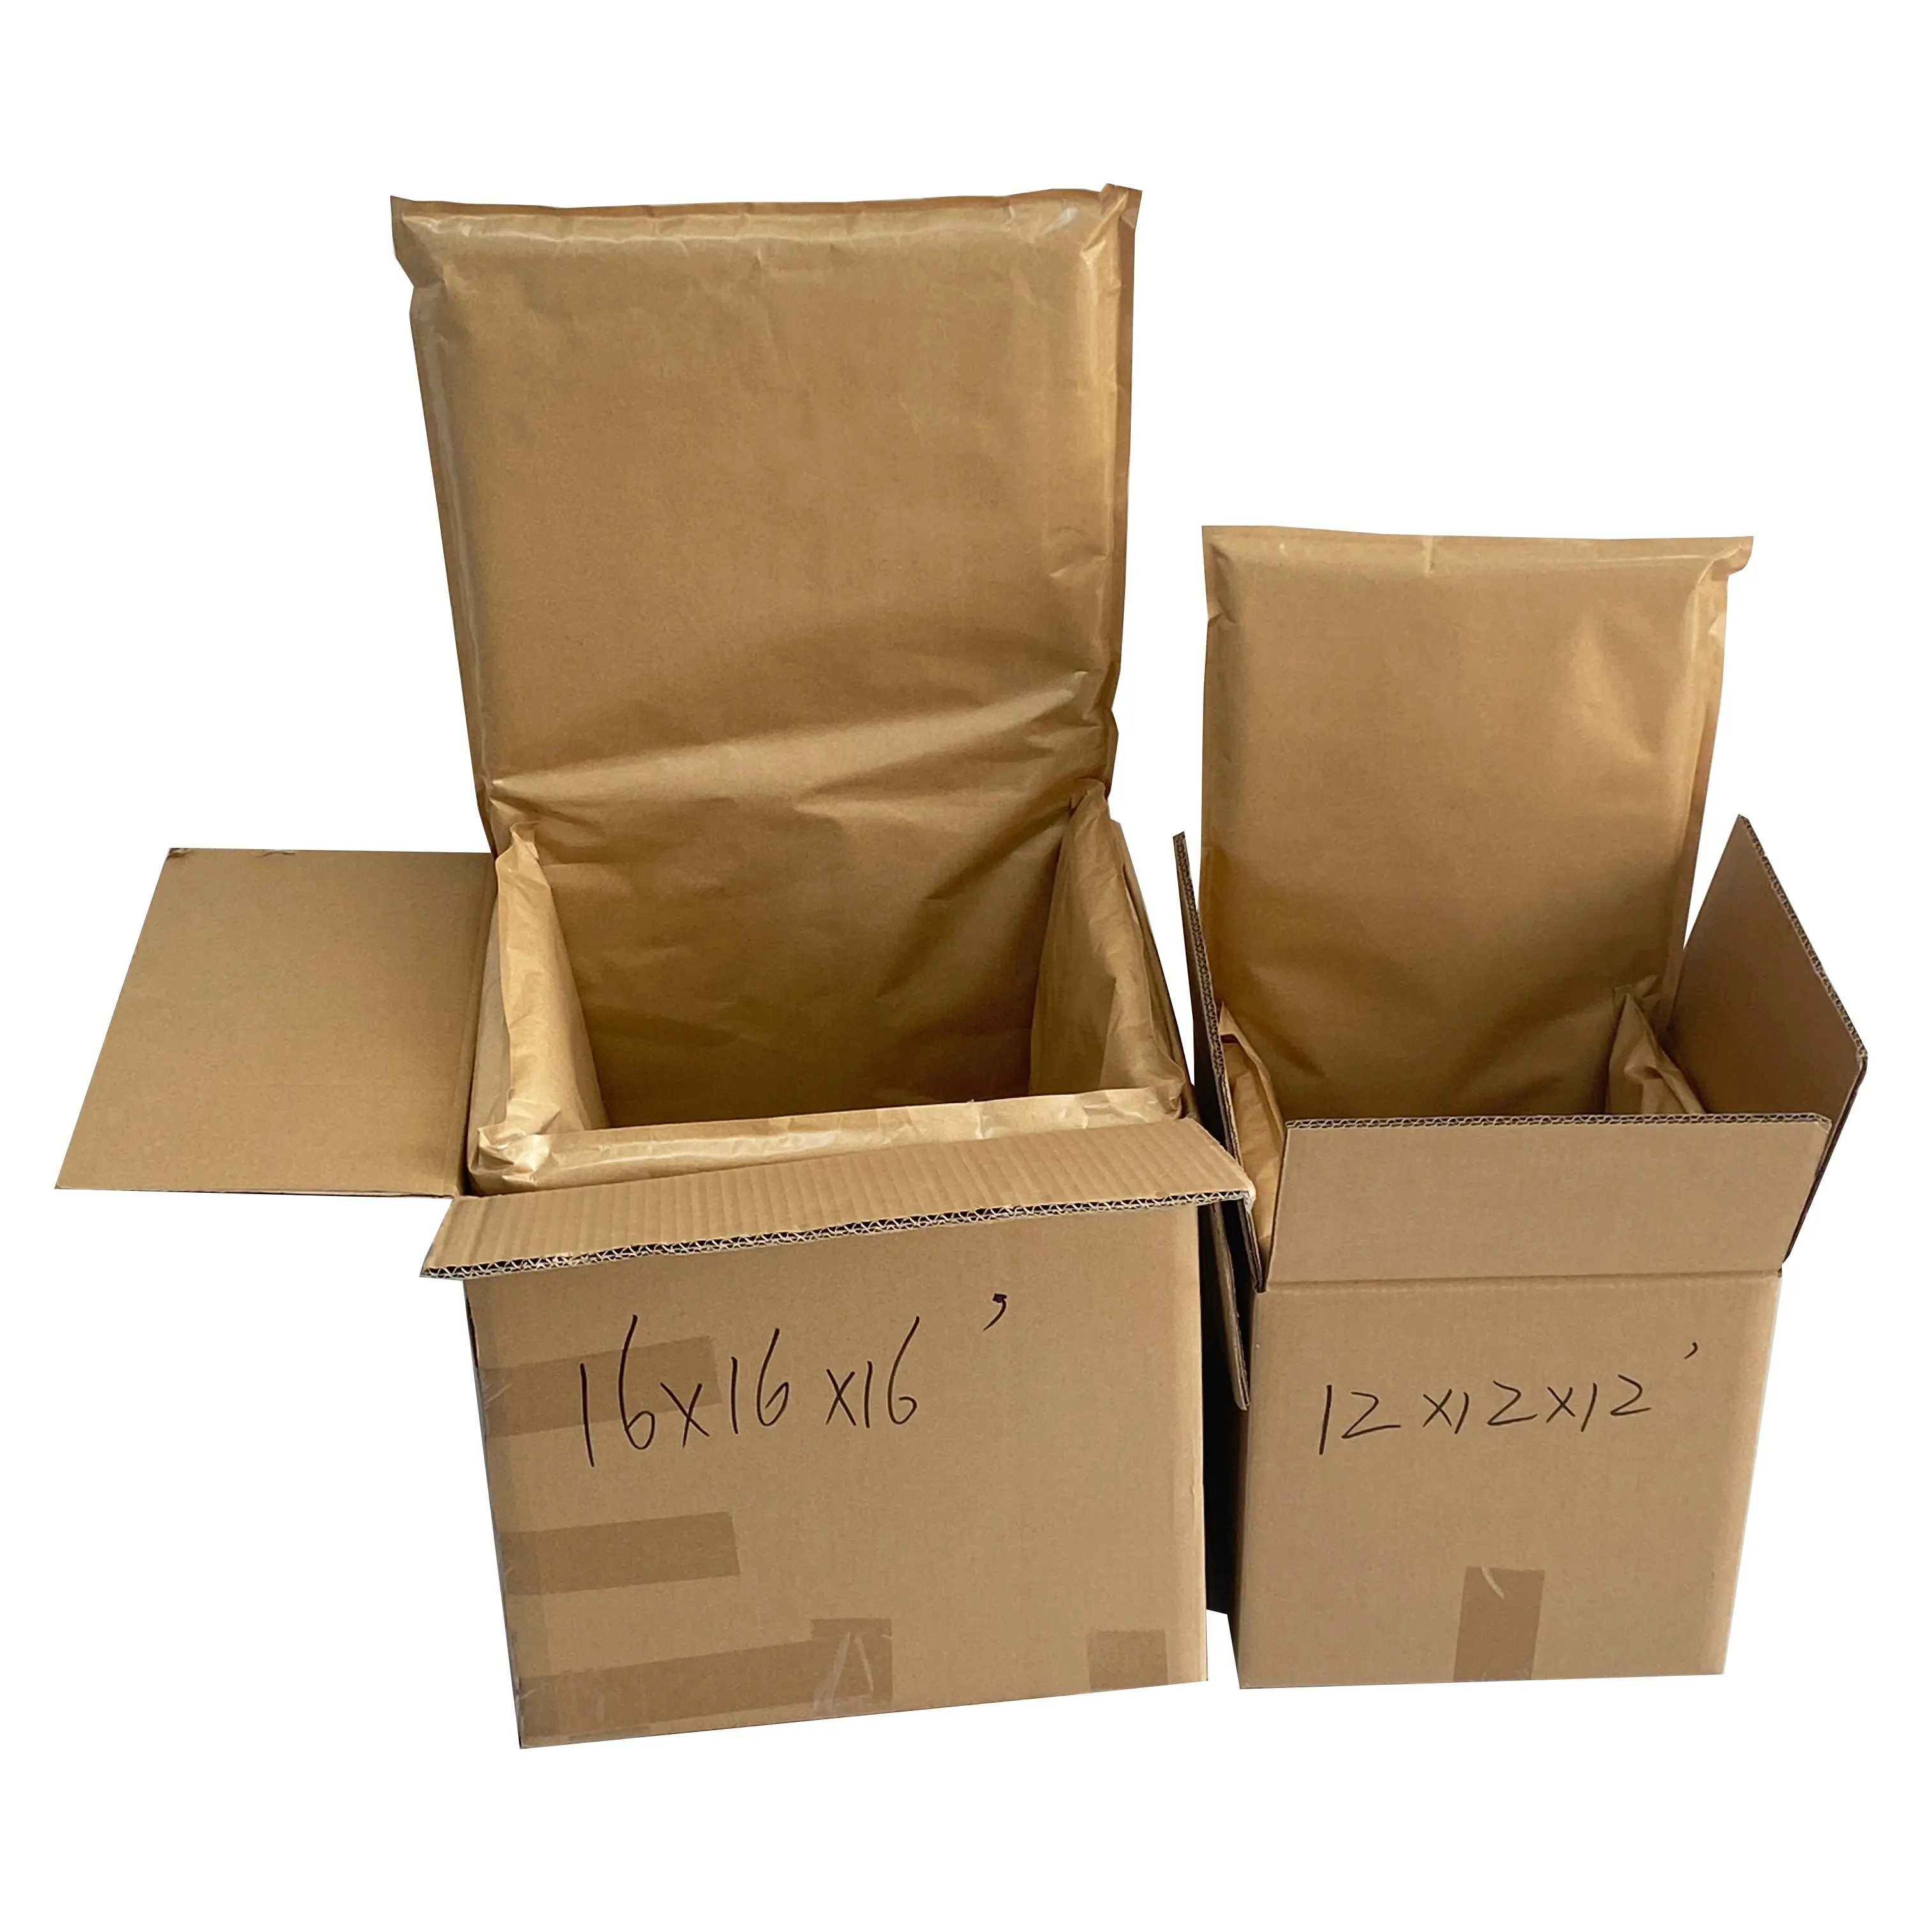 Индивидуальные производители, Защита окружающей среды, холодная, 48-72 часа, пластиковая коробка, сумка для упаковки пищевых продуктов